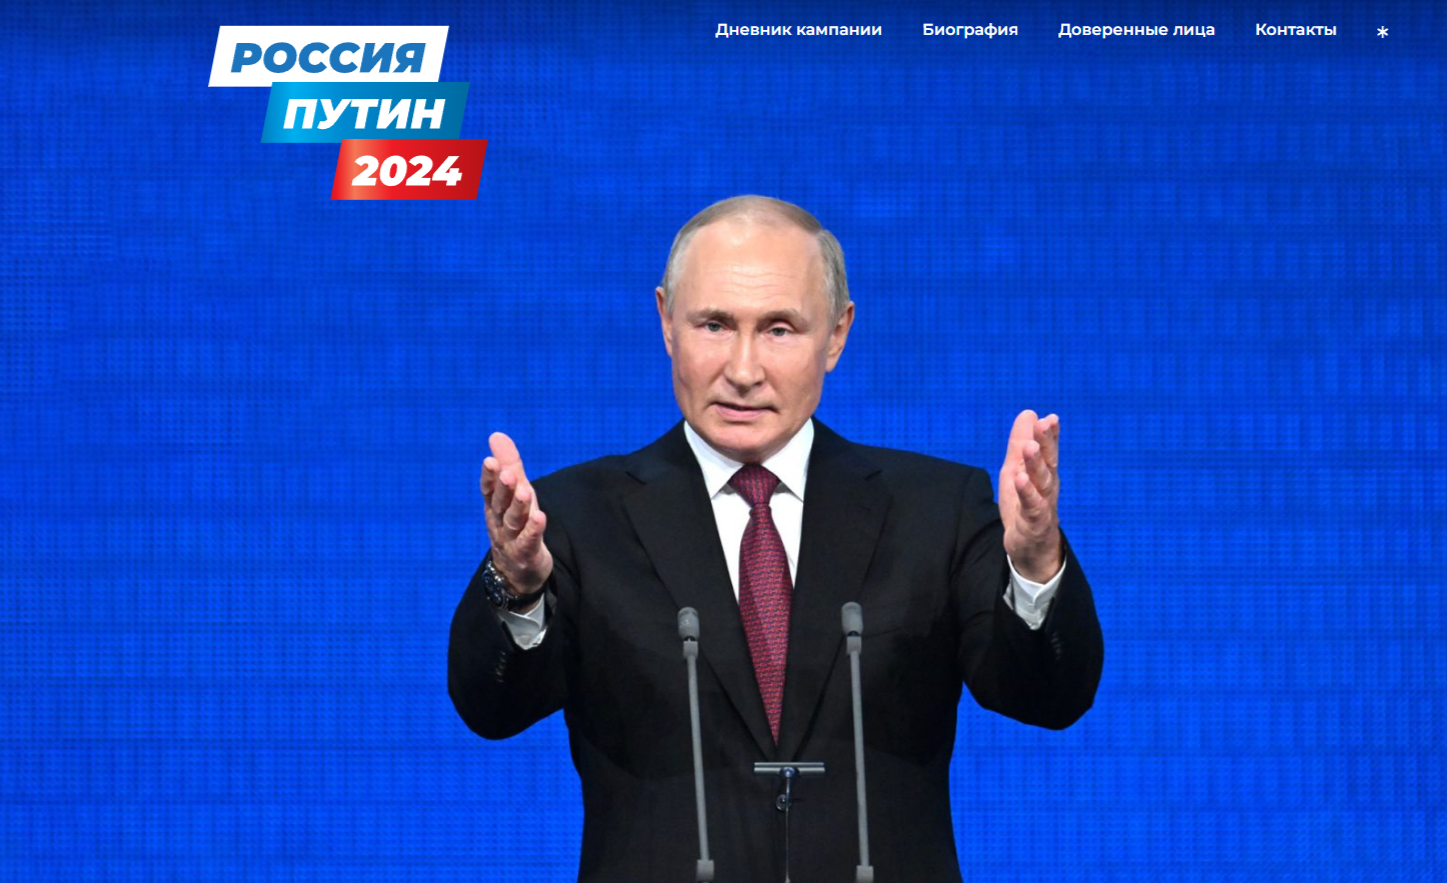 Начал работу предвыборный сайт кандидата в президенты Владимира Путина